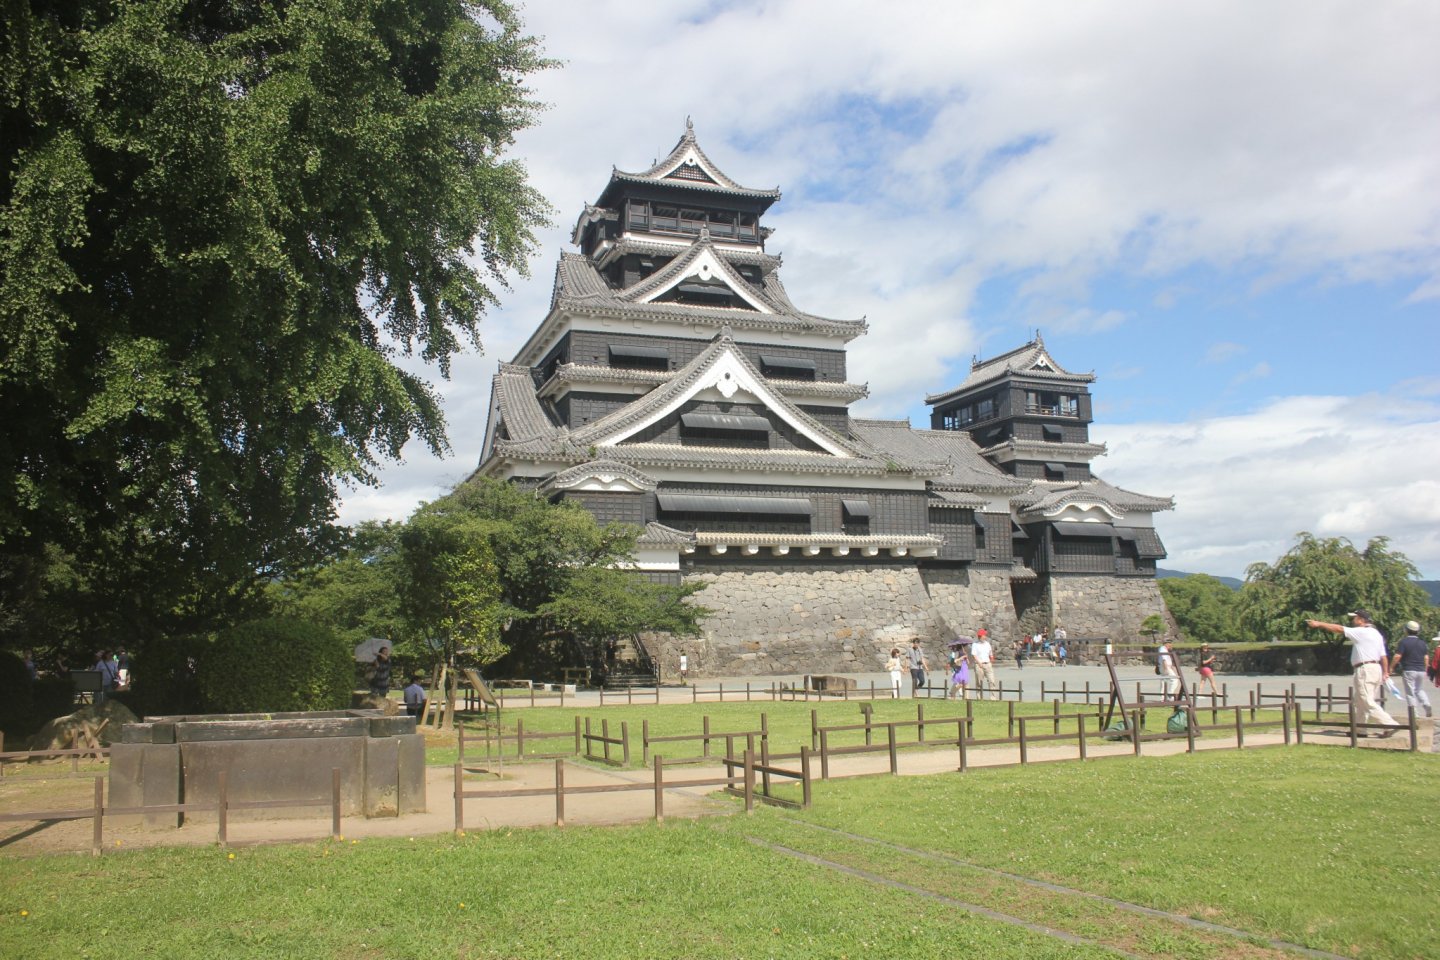 Kastil klasik di selatan Jepang